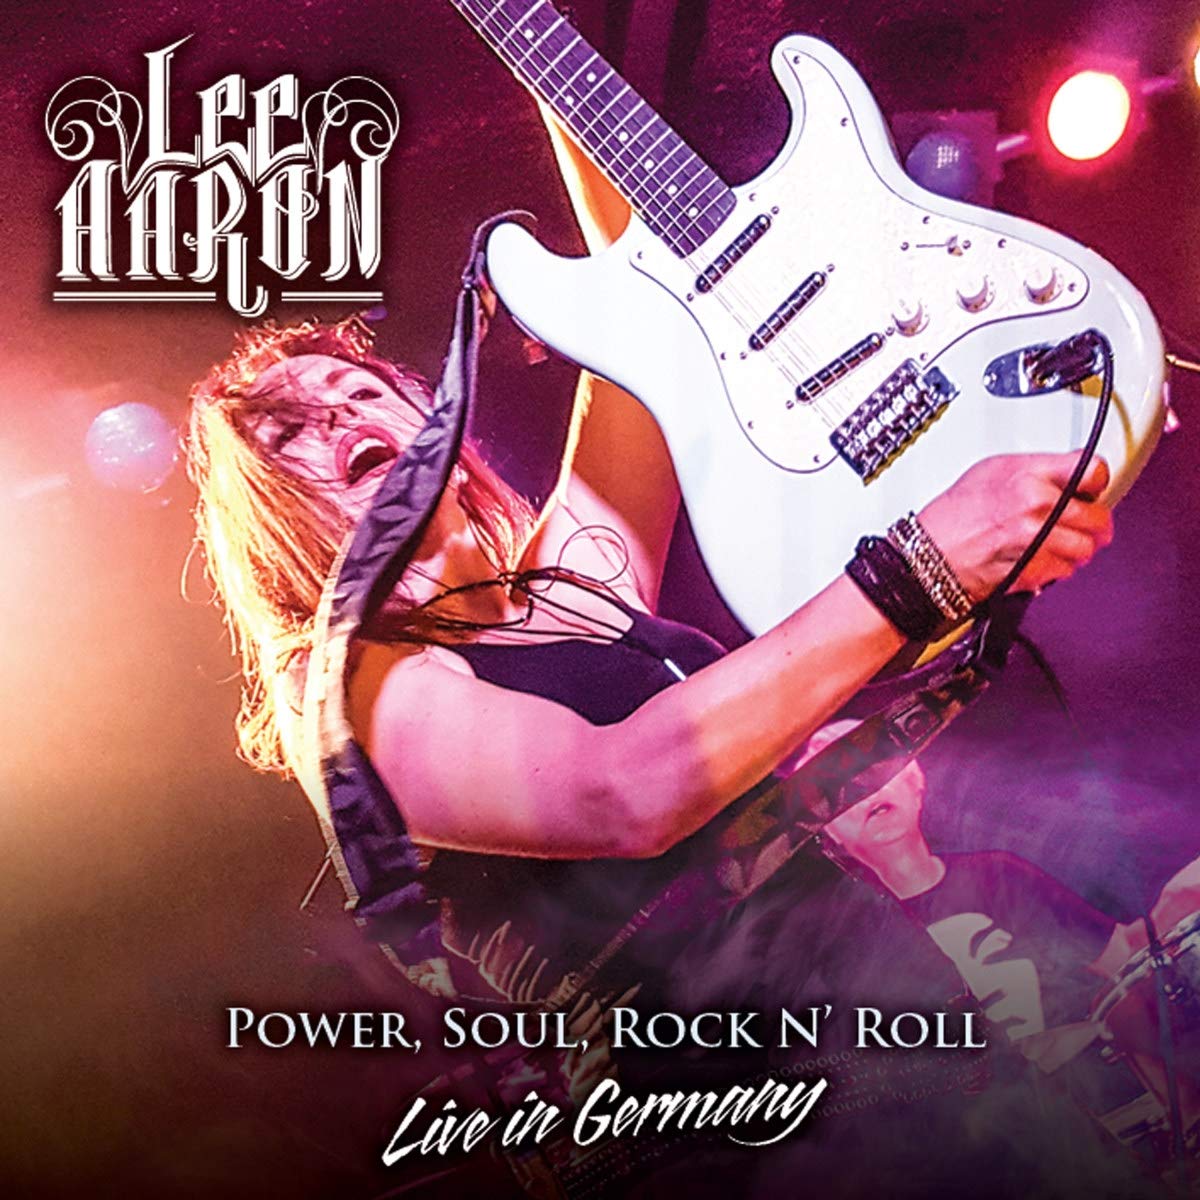 Power, Soul, Rock N' Roll - Live in Germany